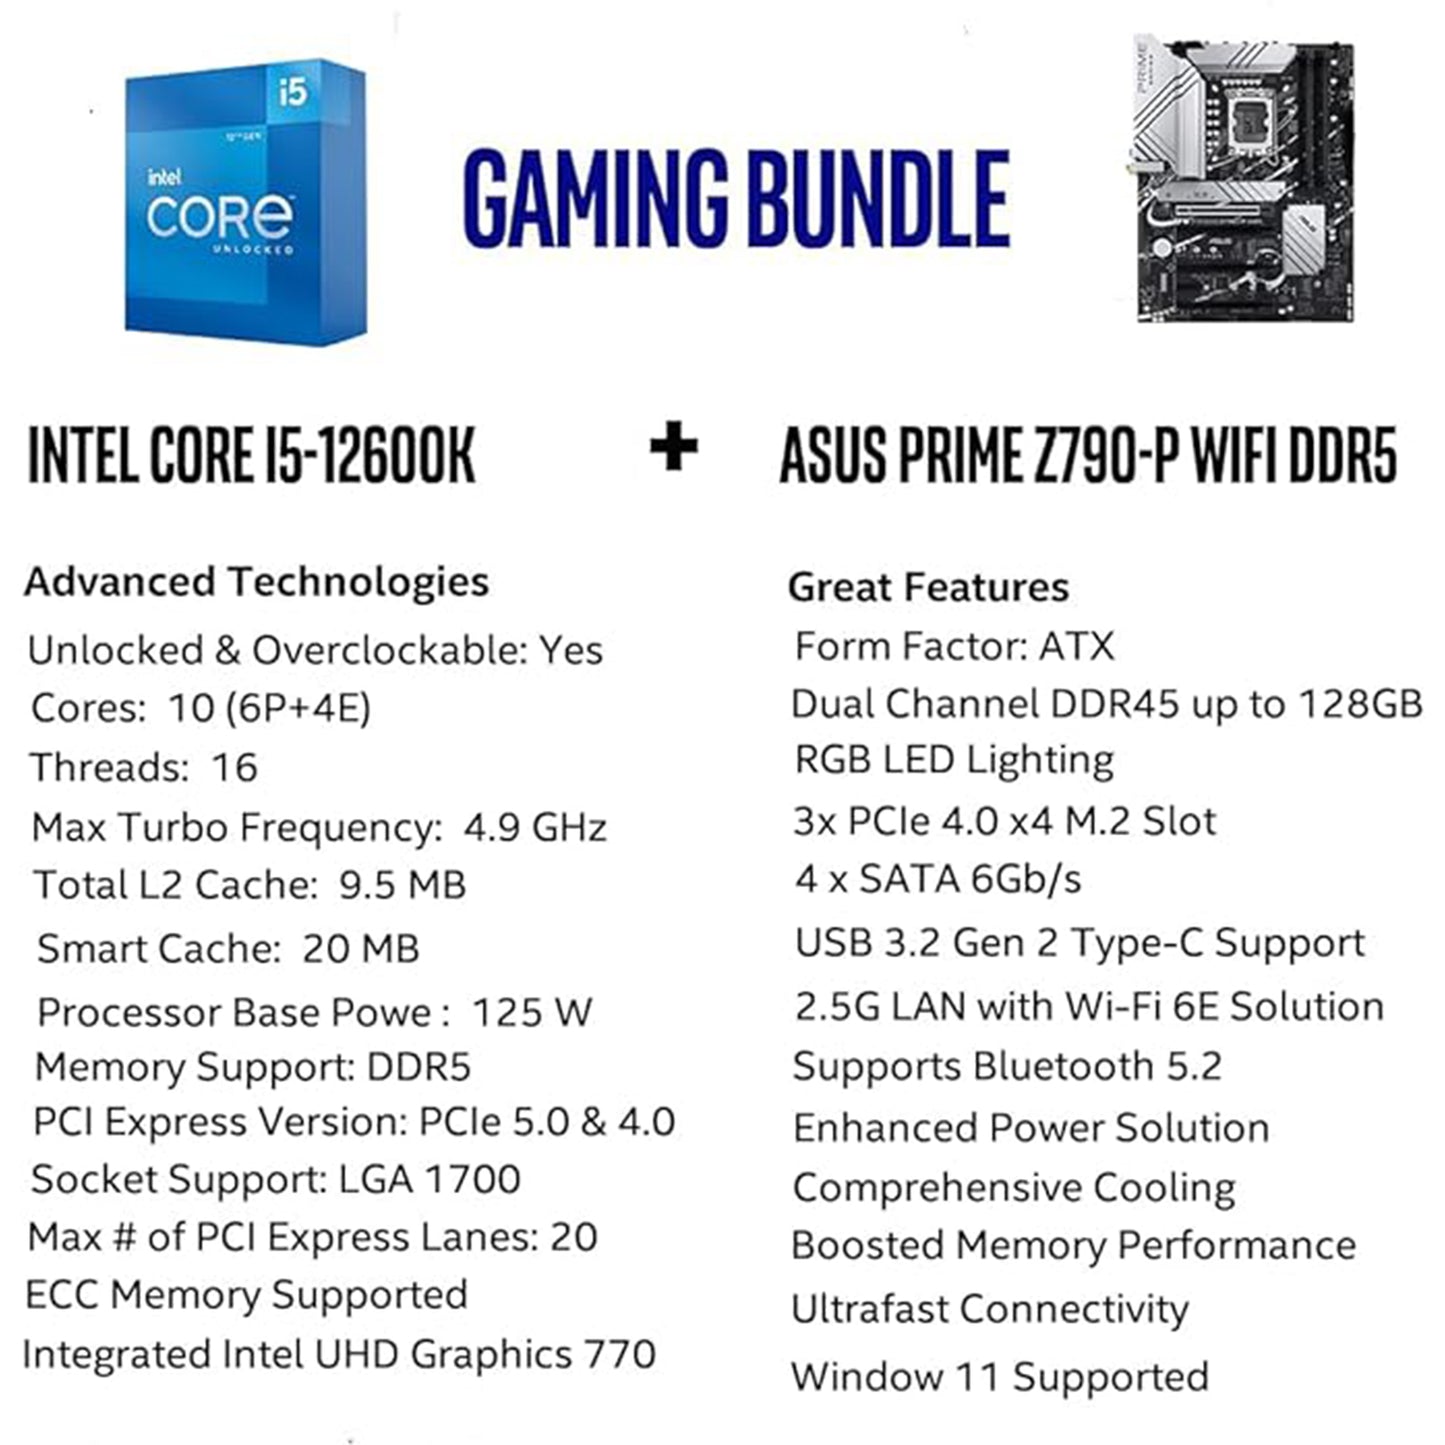 معالج Intel Core i5-12600K 10 (6P+4E) من Micro Center يصل إلى 4.9 جيجاهرتز غير مقفل LGA 1700 معالج سطح المكتب مع حزمة Intel UHD Graphics 770 المدمجة مع اللوحة الأم ASUS Prime Z790-P WiFi DDR5 للألعاب 